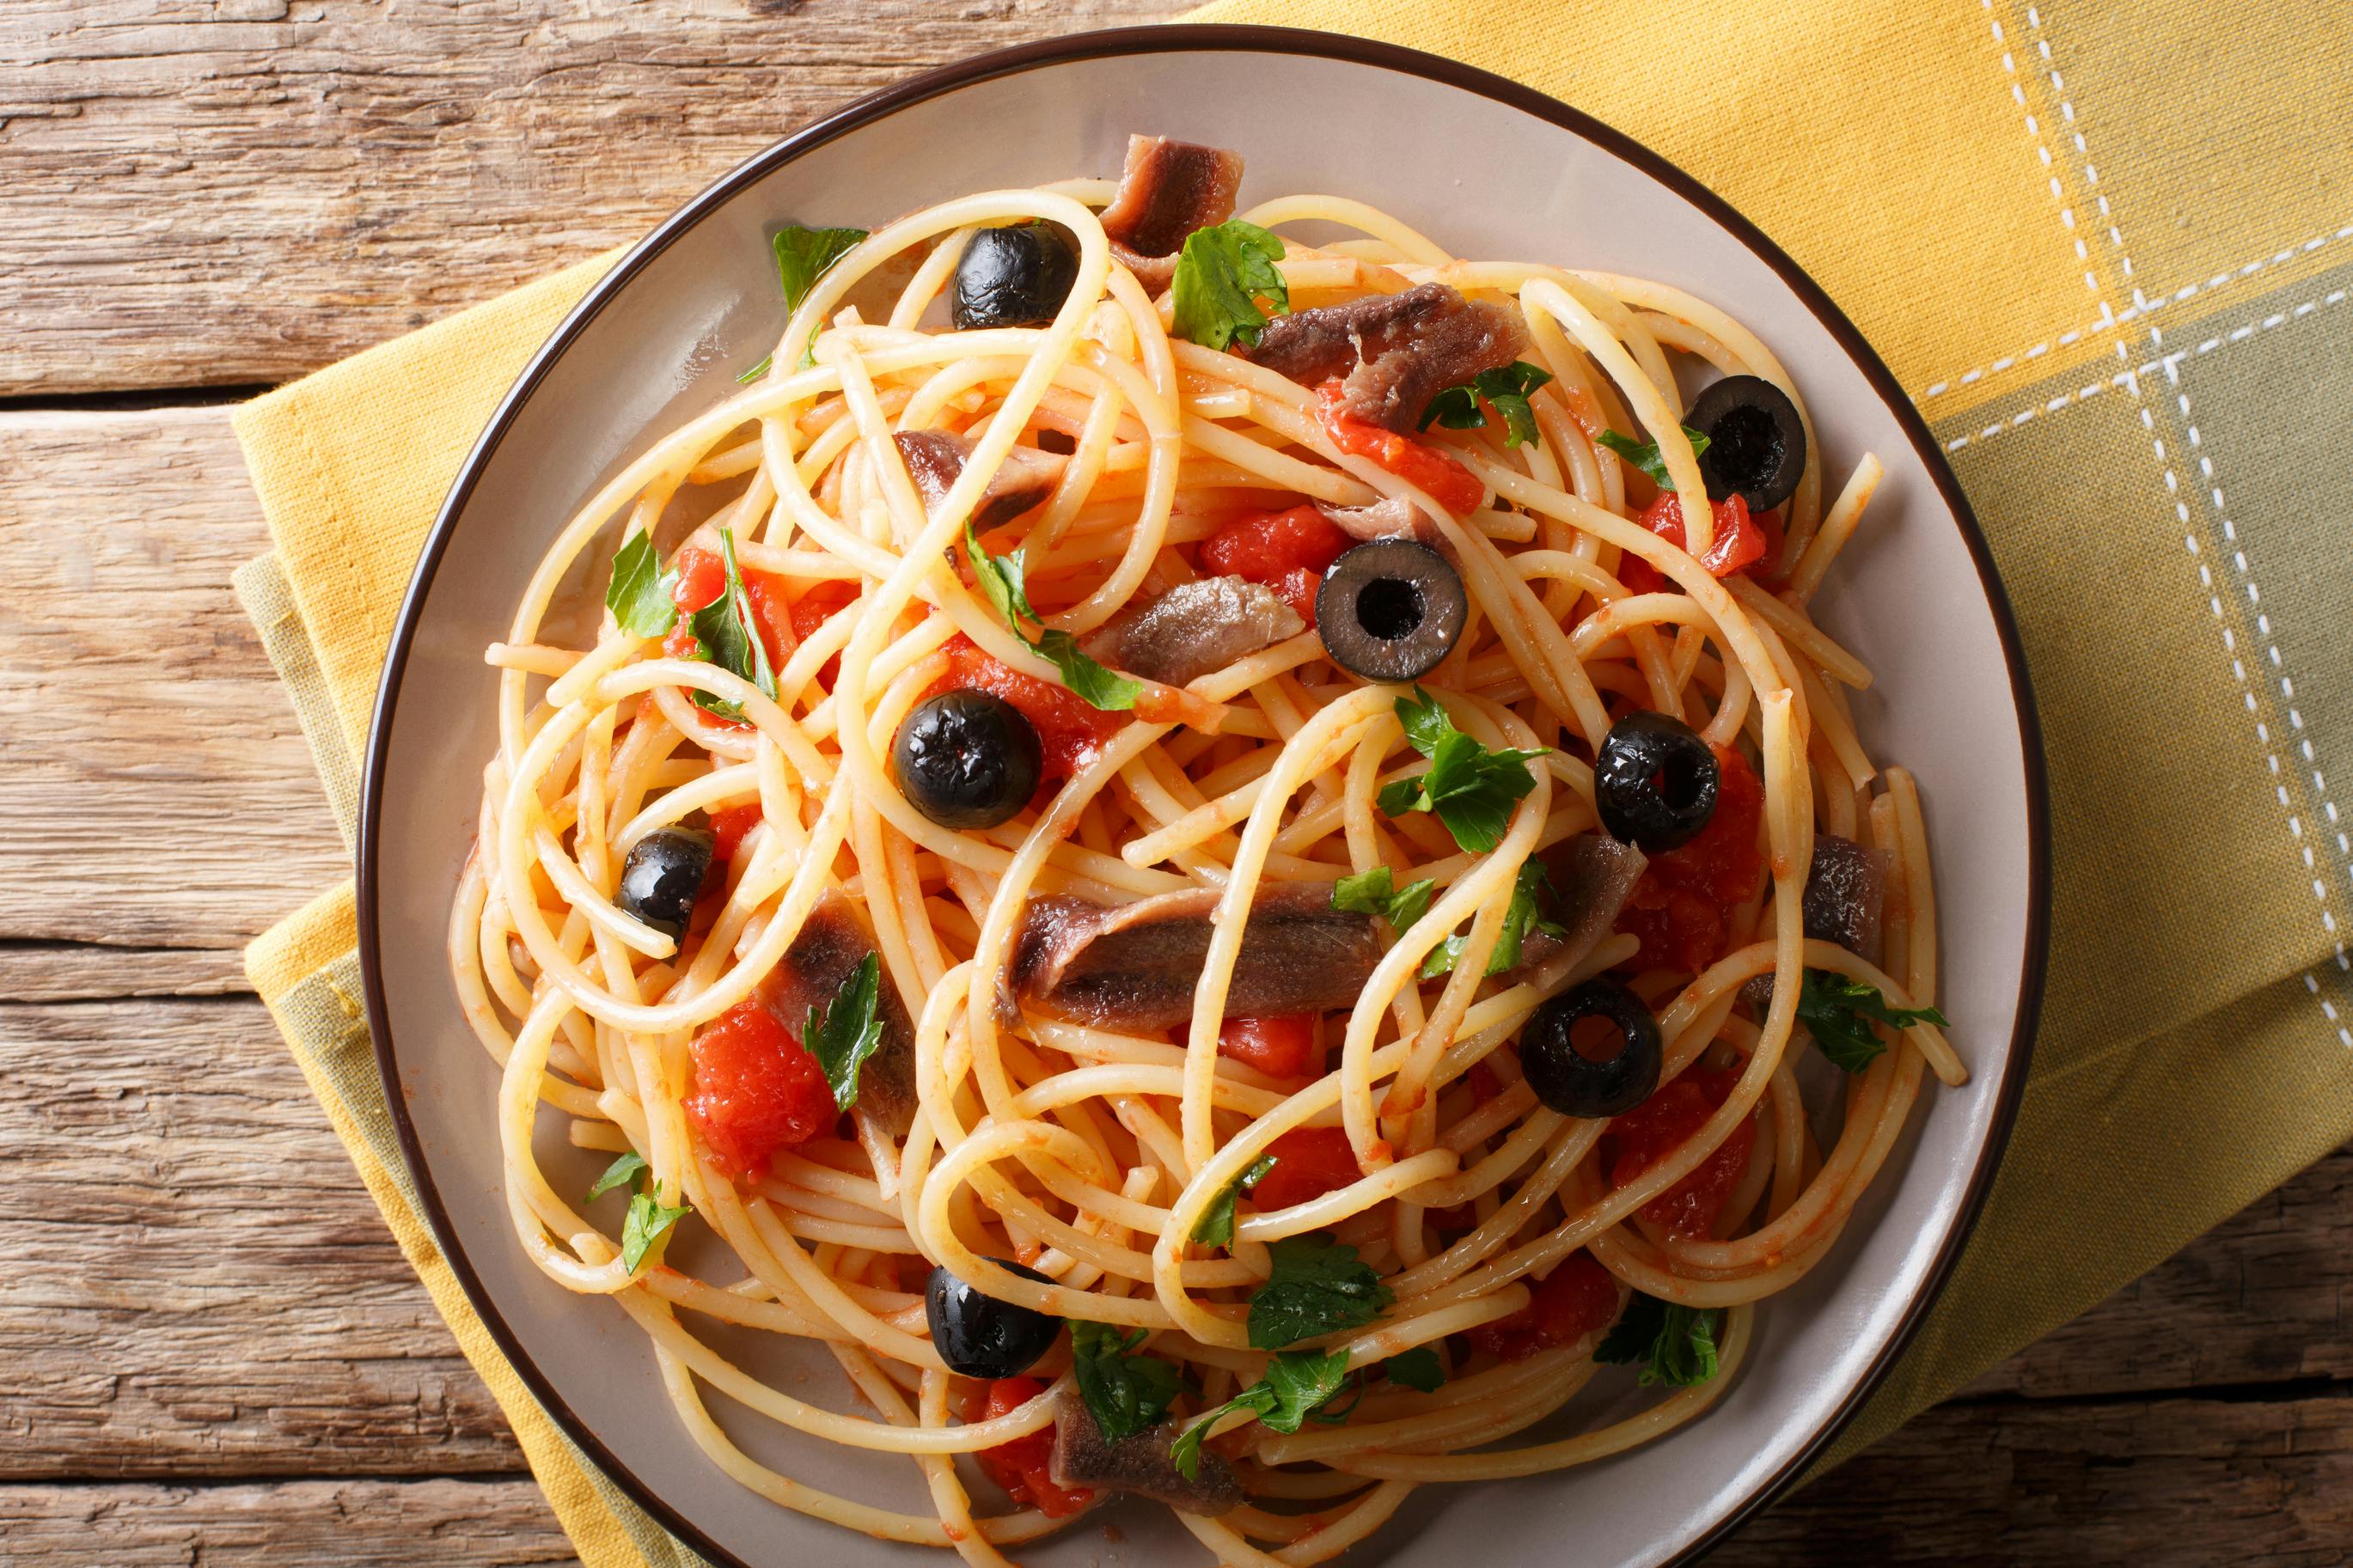 A plate of puttanesca spaghetti